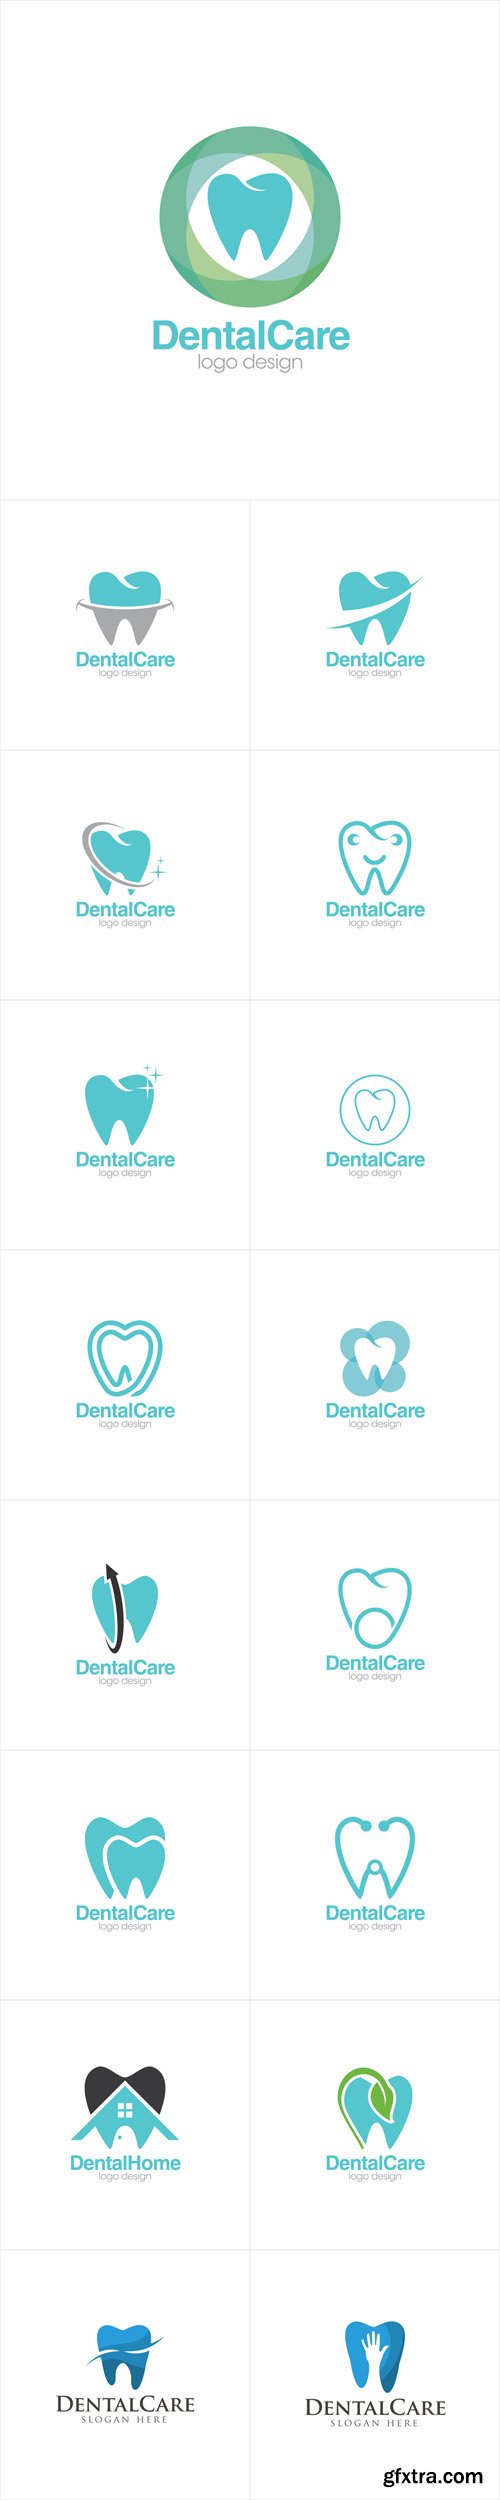 Vector Set - Dental Care Creative Concept Logo Design Templates